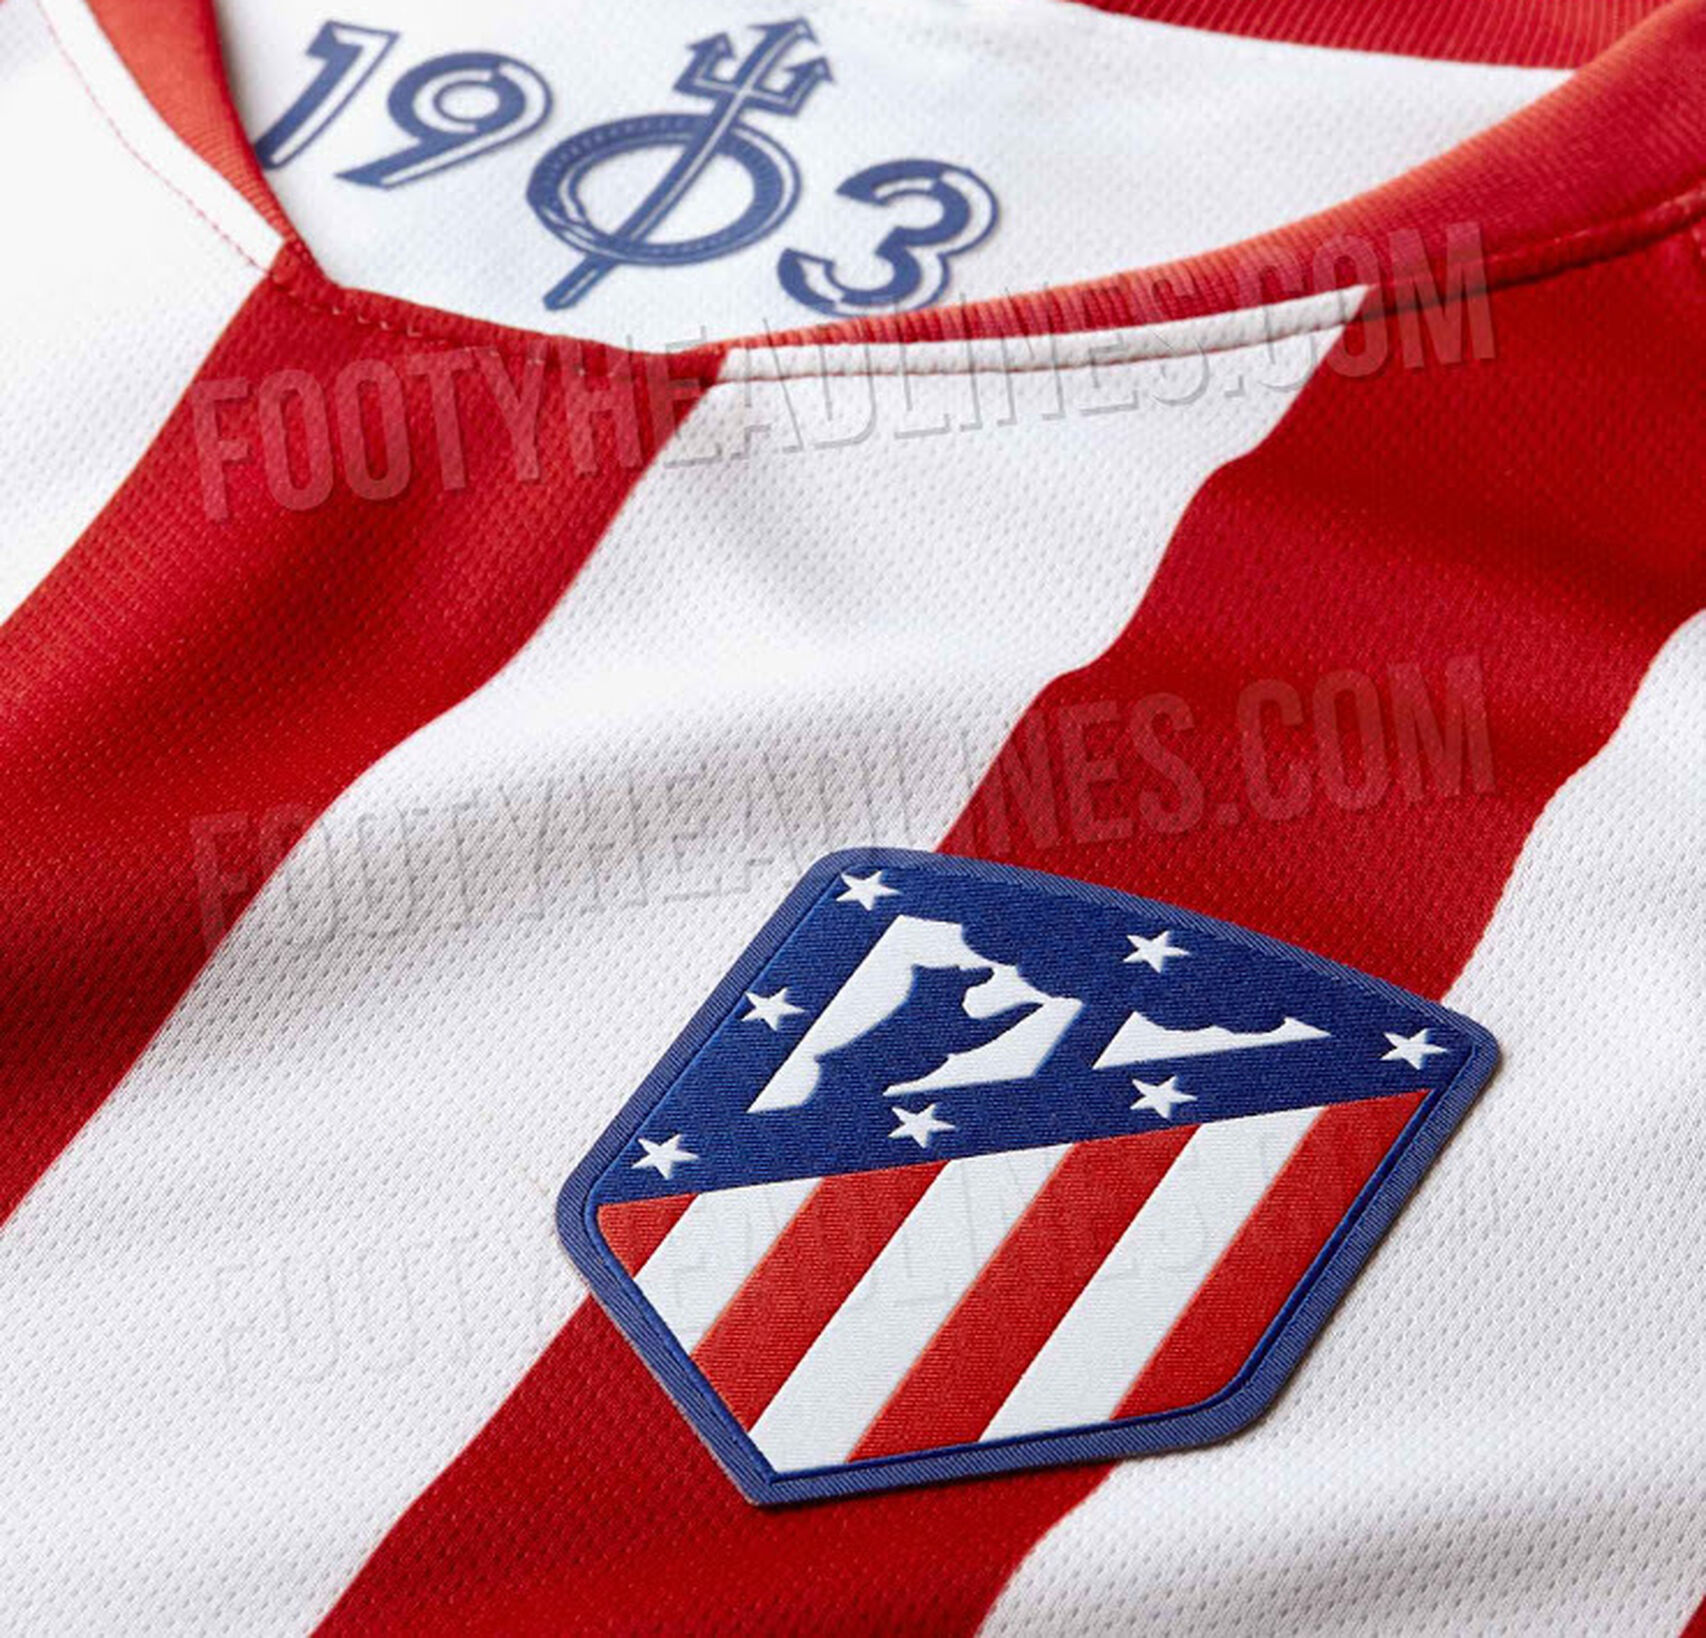 Filtran la camiseta del Atlético de Madrid para la próxima temporada